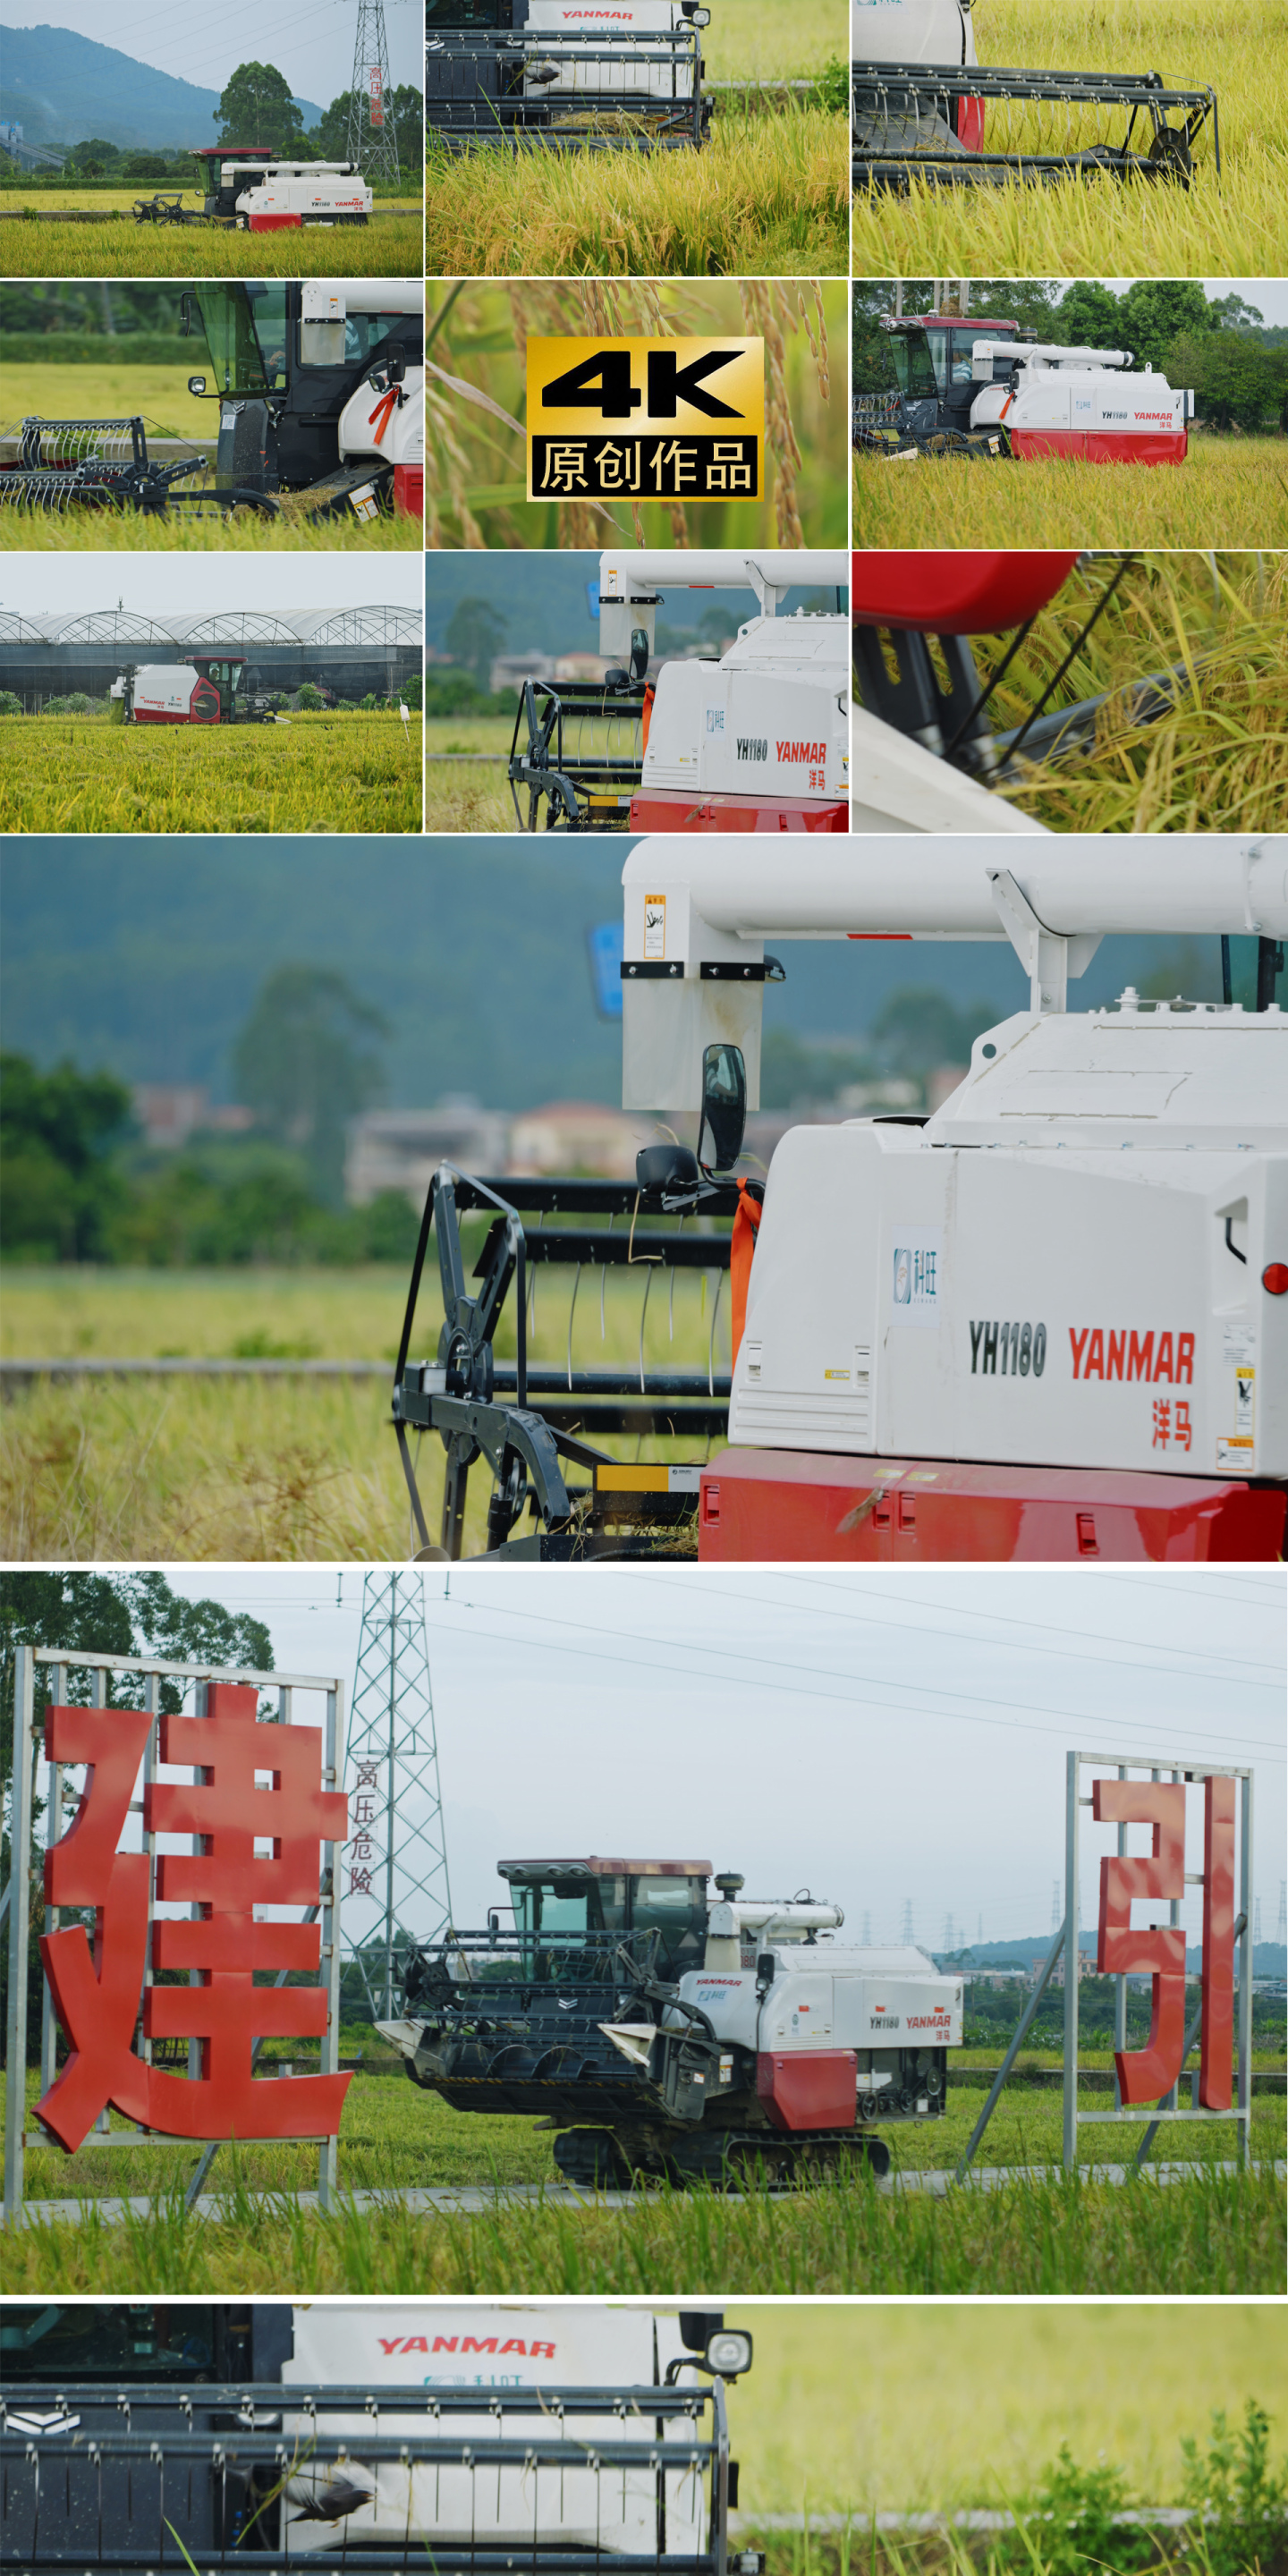 稻田丰收机器收割水稻机械化生产